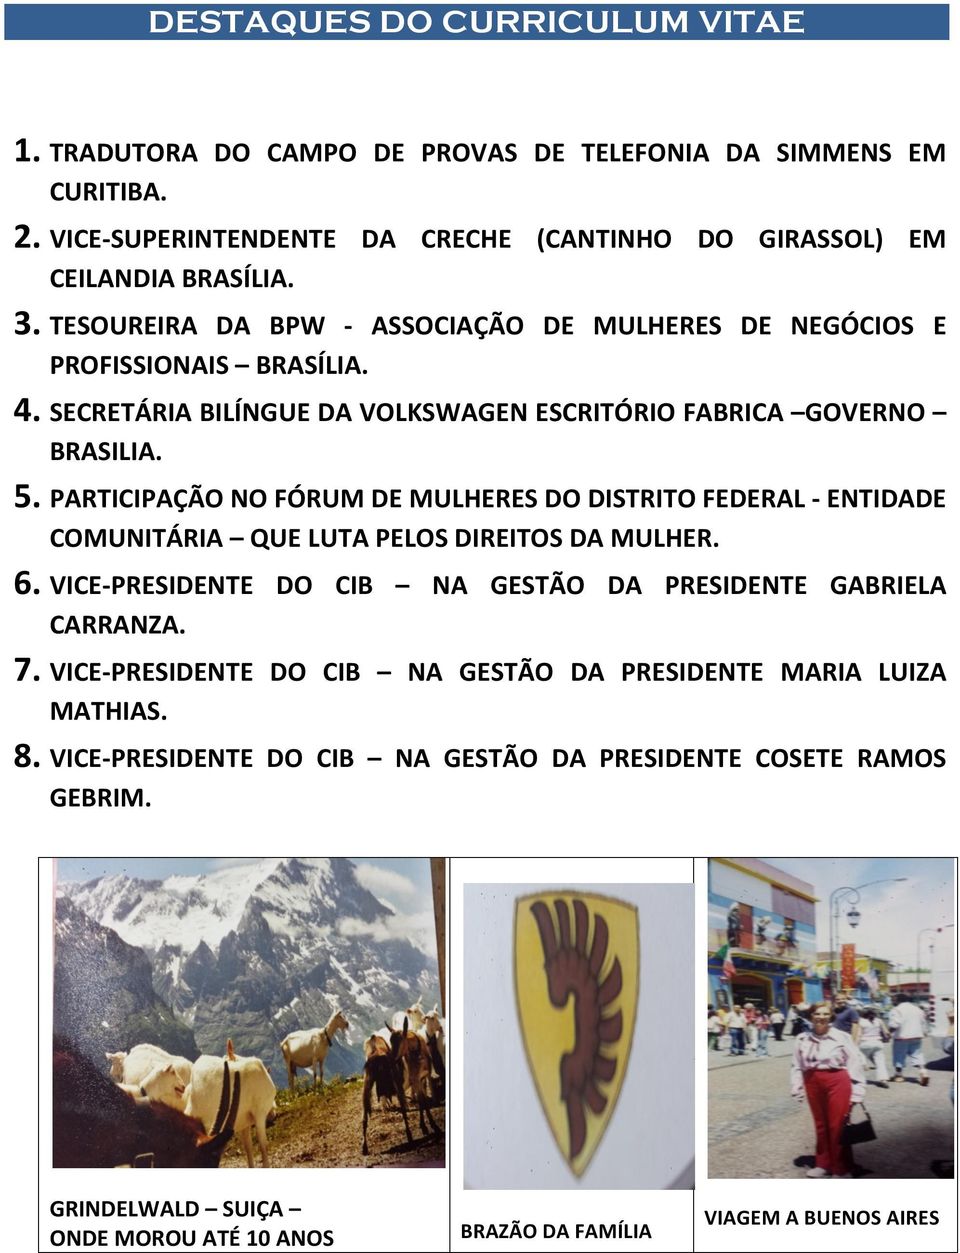 PARTICIPAÇÃO NO FÓRUM DE MULHERES DO DISTRITO FEDERAL - ENTIDADE COMUNITÁRIA QUE LUTA PELOS DIREITOS DA MULHER. 6. VICE- PRESIDENTE DO CIB NA GESTÃO DA PRESIDENTE GABRIELA CARRANZA. 7.